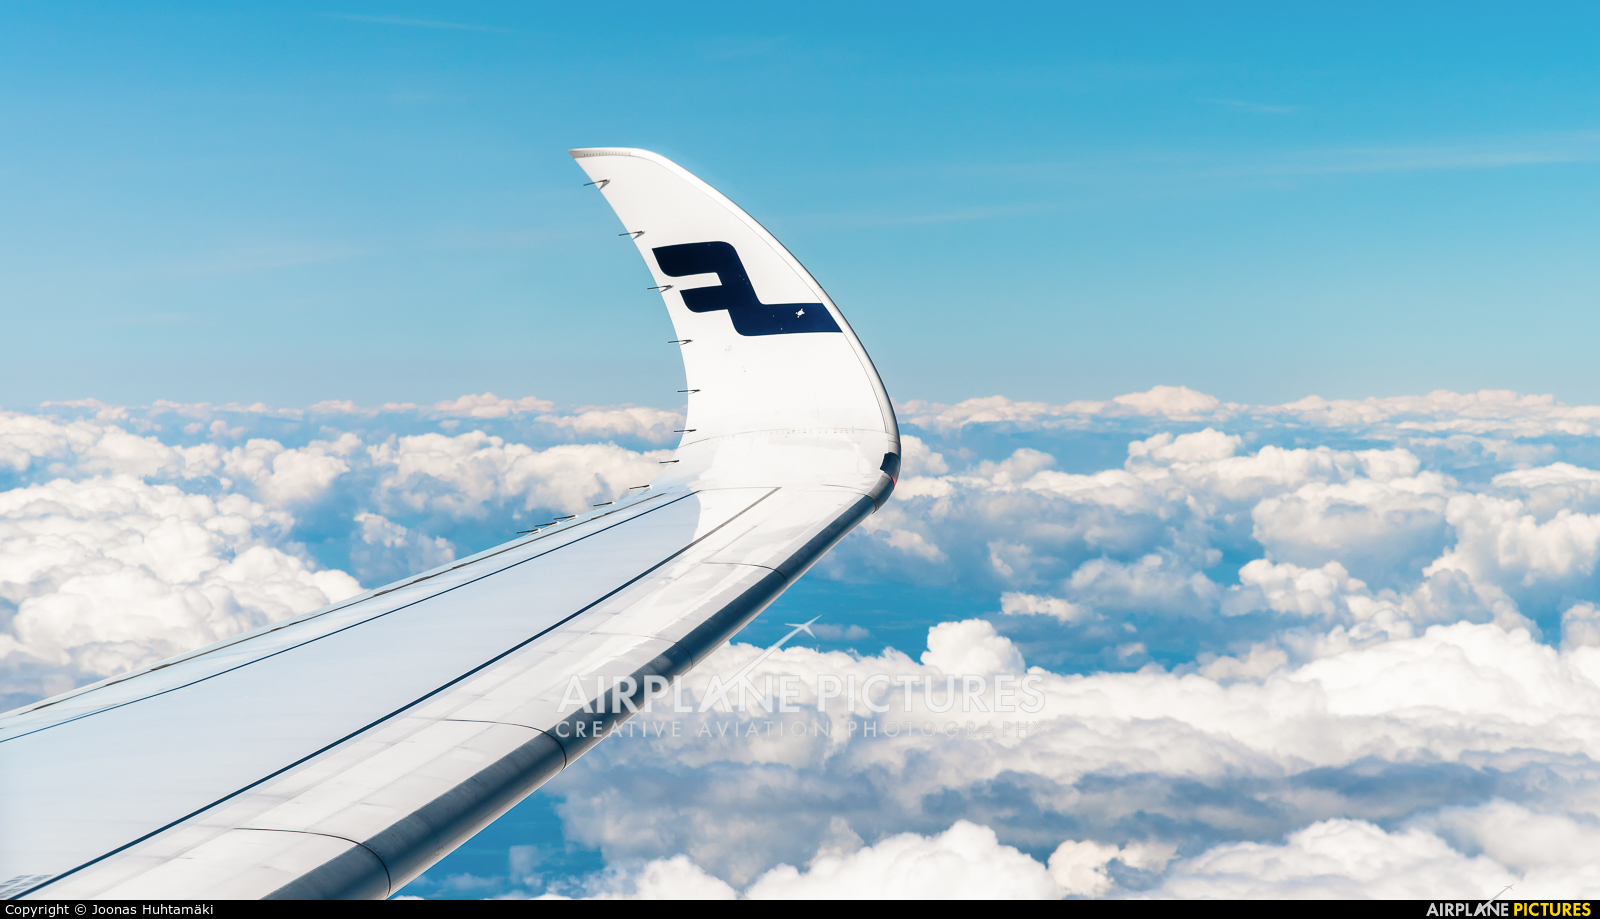 Finnair OH-LWG aircraft at In Flight - International